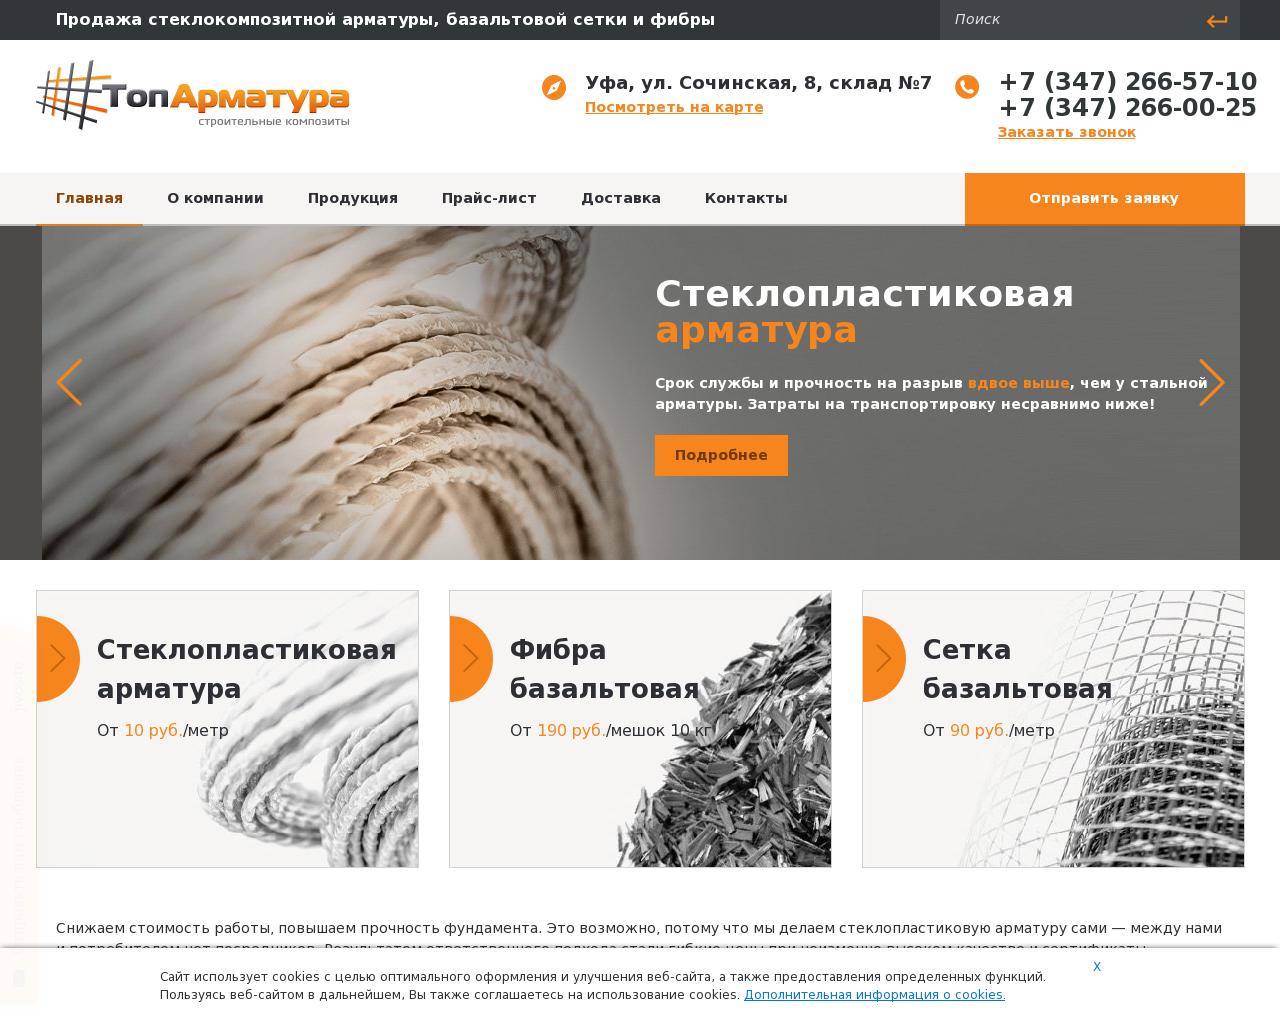 Изображение сайта toparmatura.ru в разрешении 1280x1024